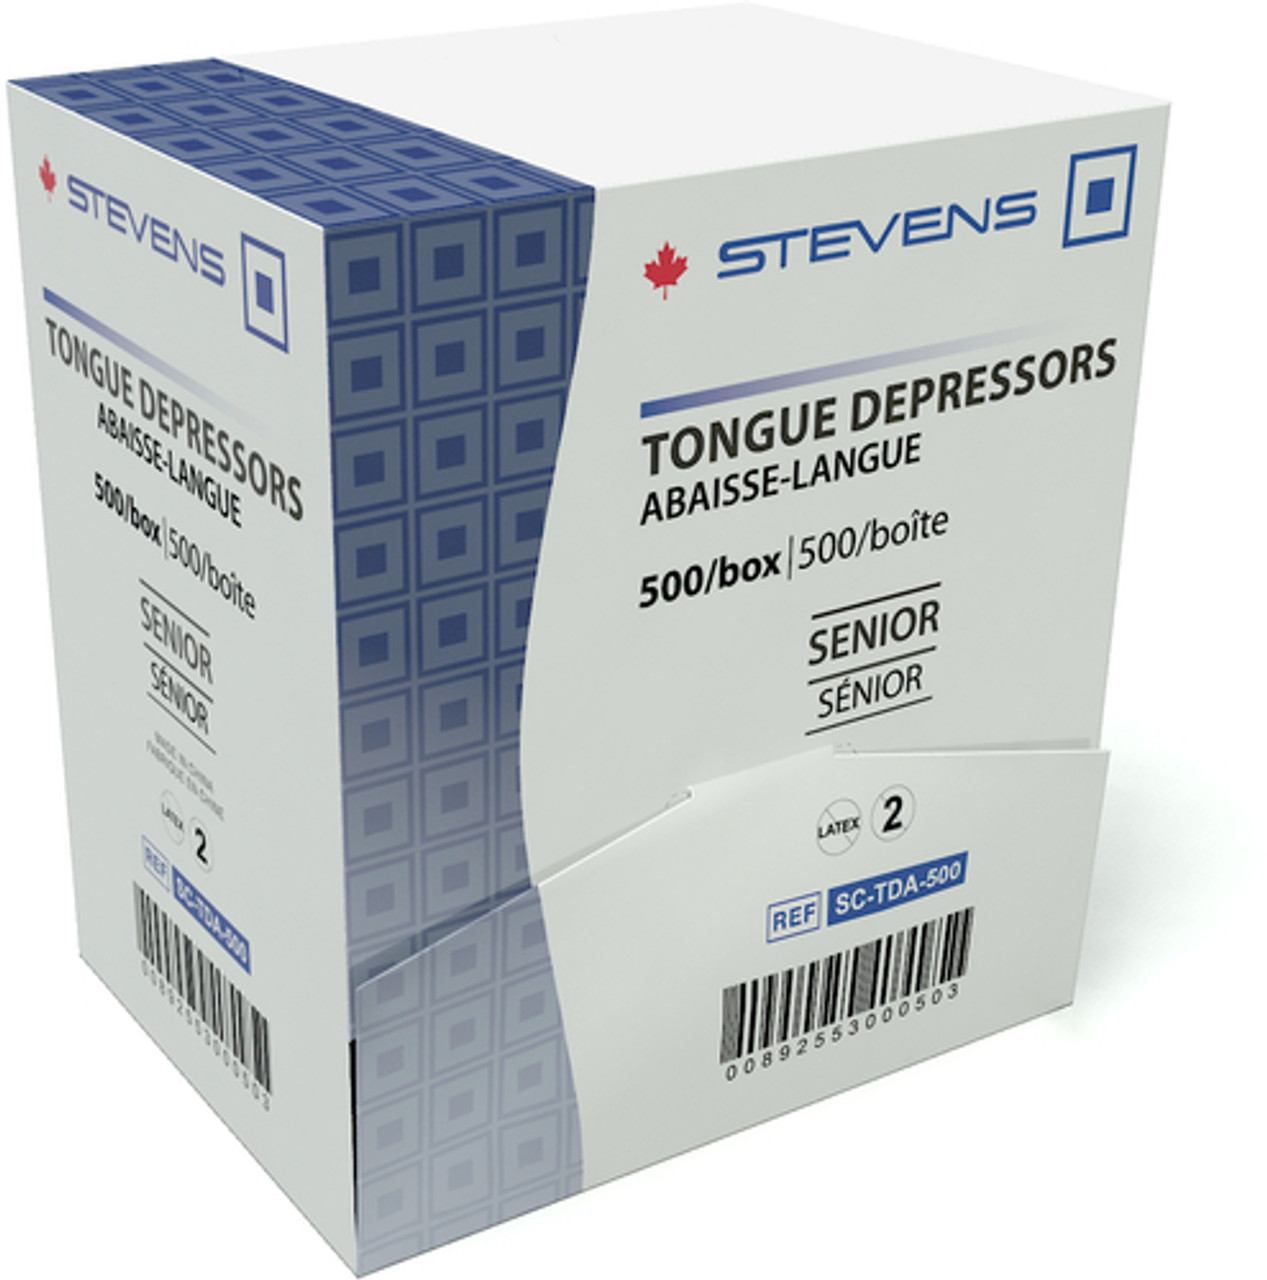 TONGUE DEPRESSOR SENIOR WOODEN 10 Boxes of 500 (5,000 Pcs) (Stevens SC-TDA-500 x 10(CS))